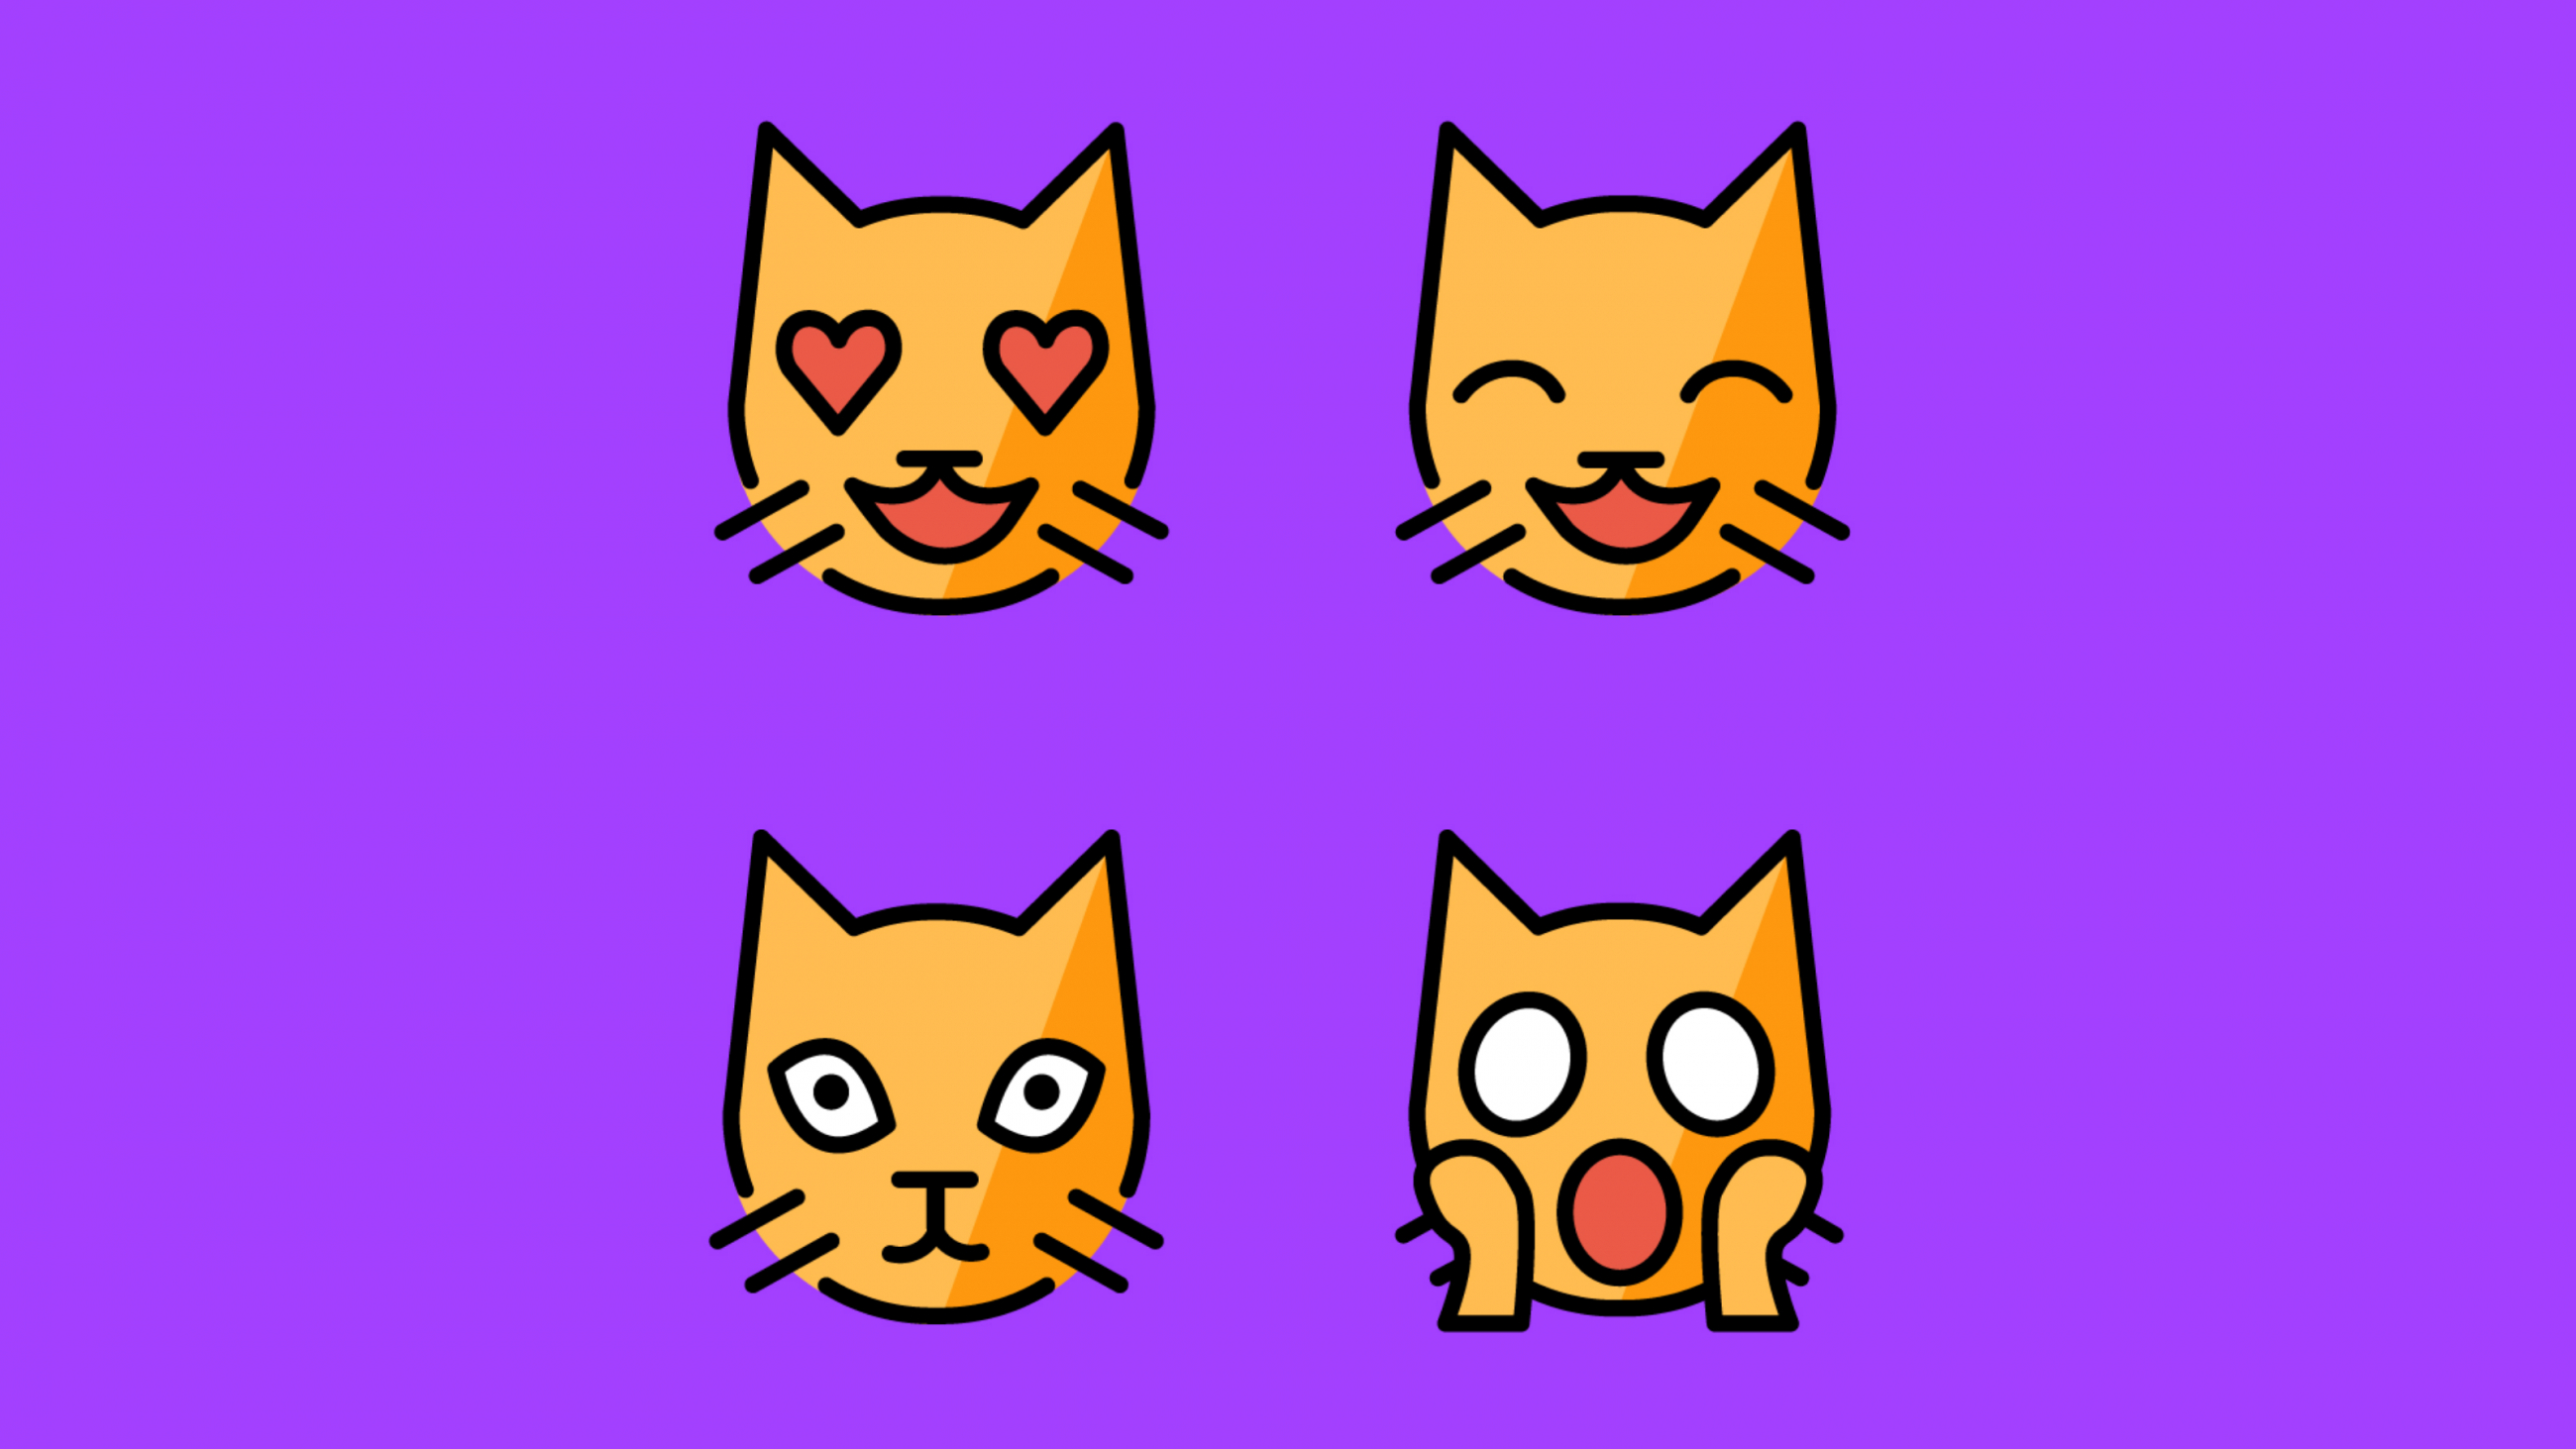 Katzen-Emojis aus dem Projekt "Feedback Box" der Zentralen Einrichtung Digitale Lehre der FH Potsdam und der BTU Cottbus-Senftenberf